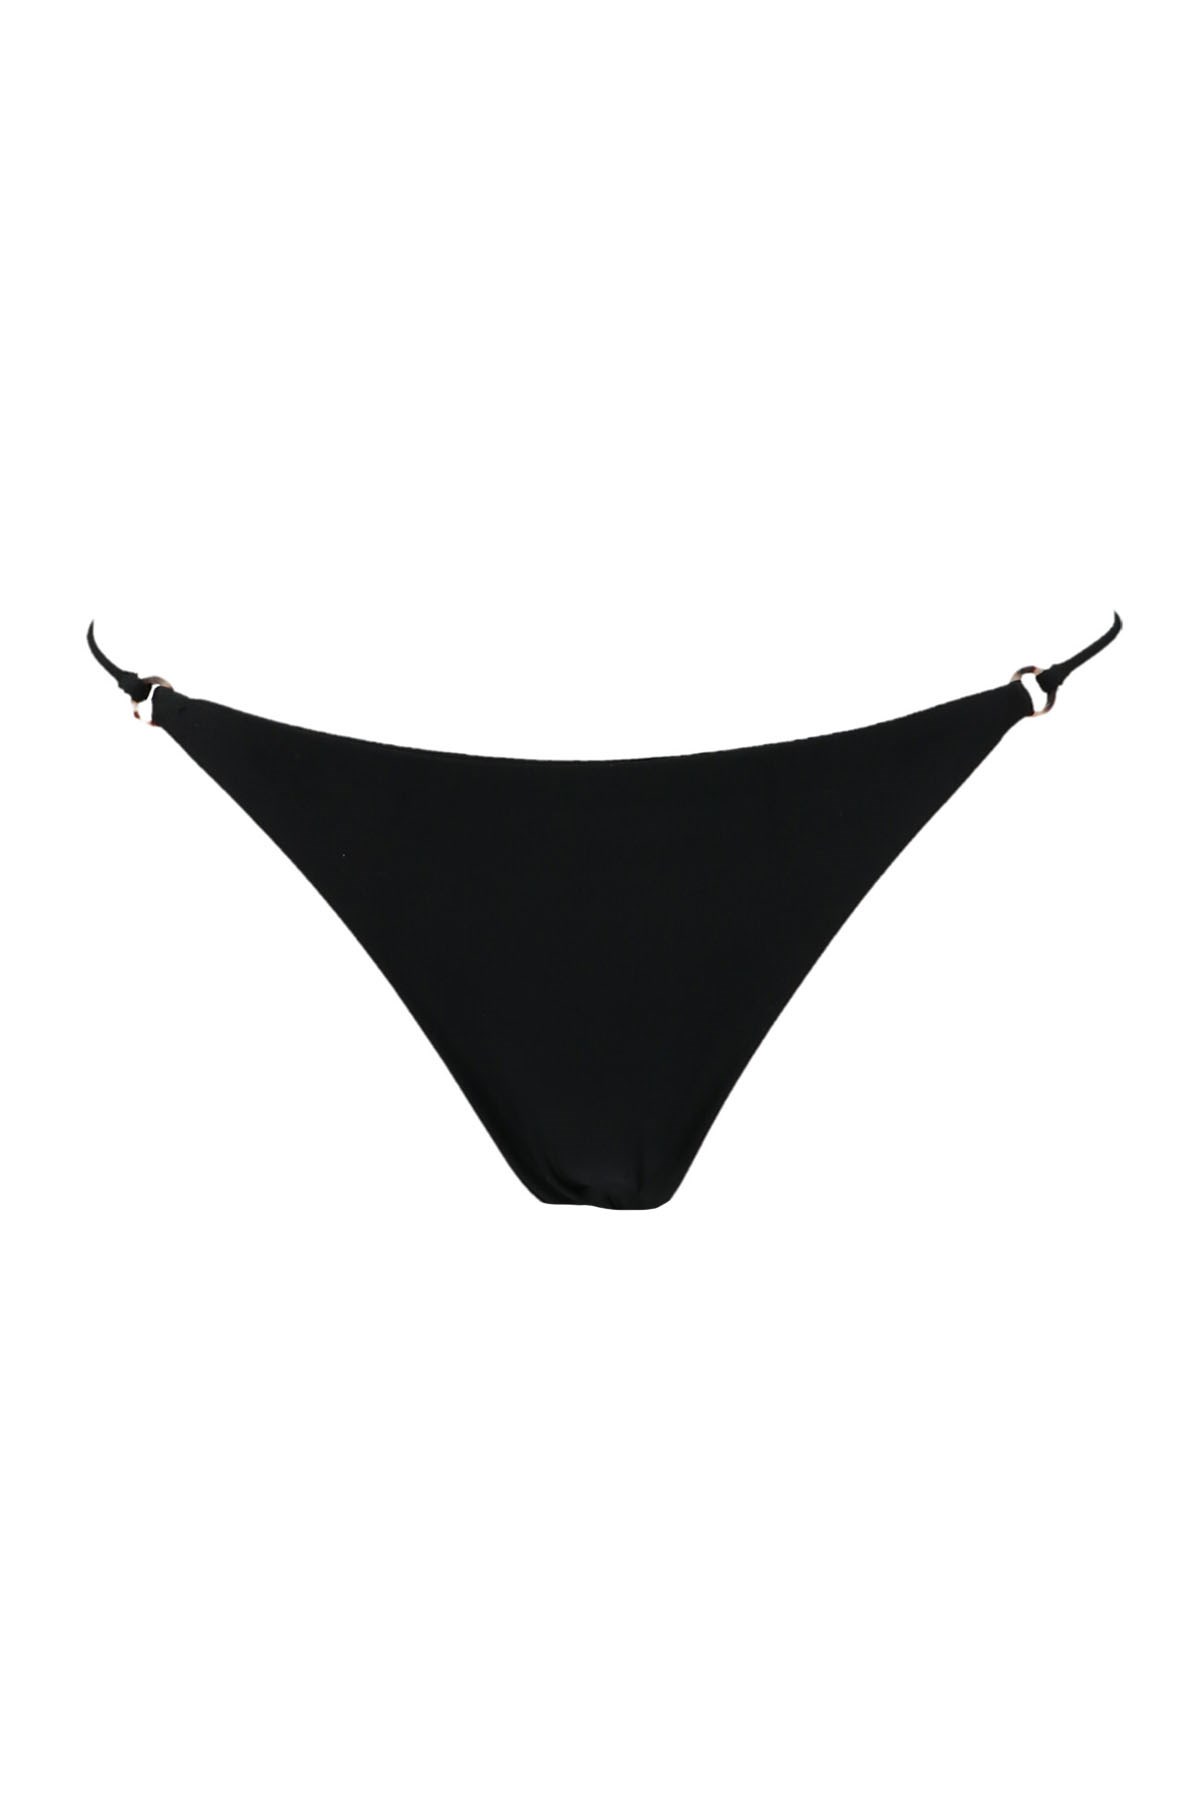 JADE SWIM 'Aria’ Bikini Bottoms